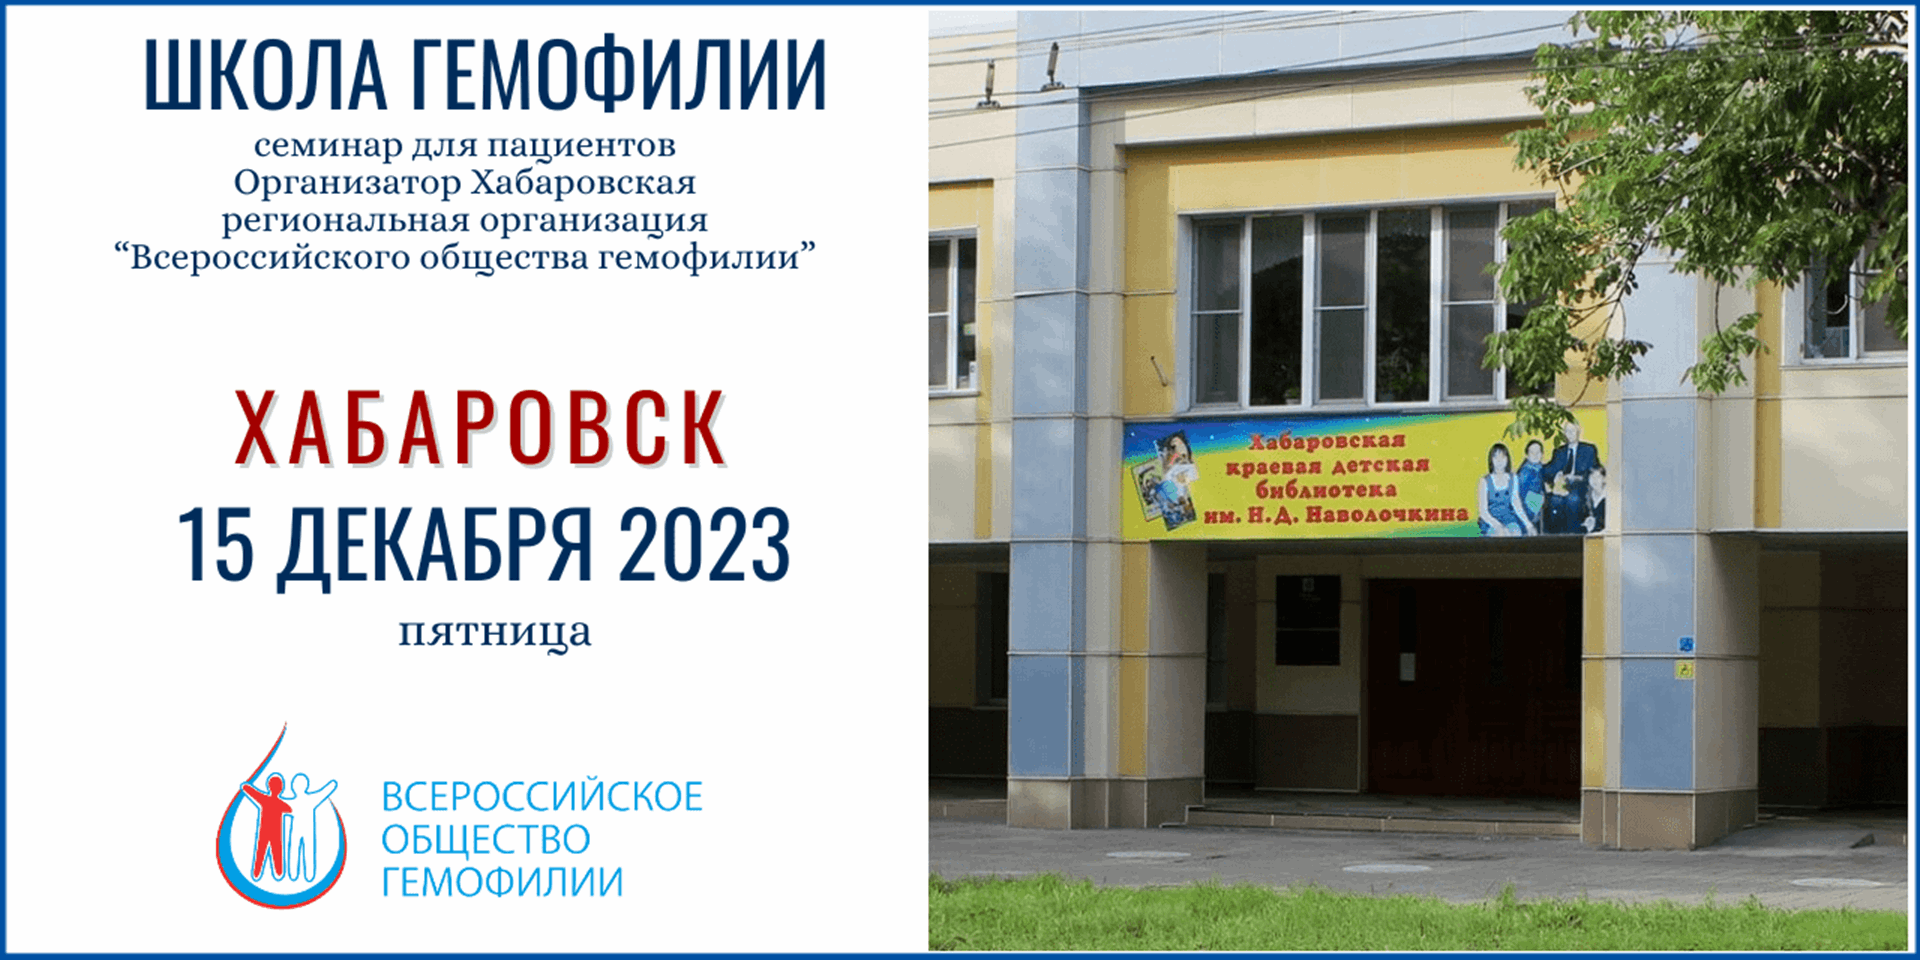 Анонс! Школа гемофилии Хабаровск 15 декабря 2023